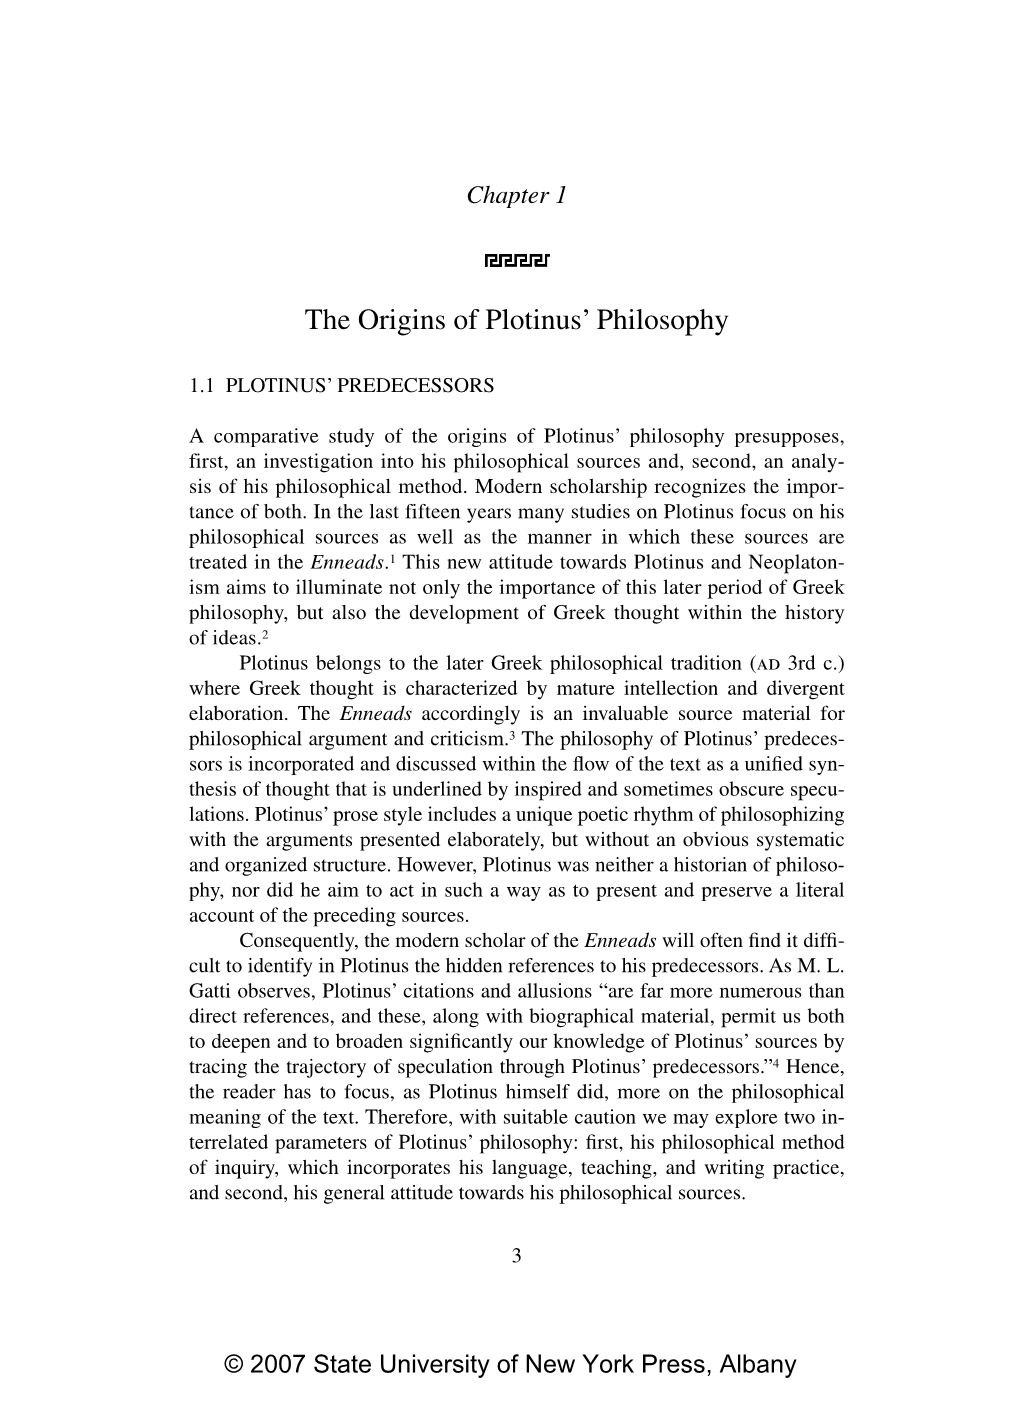 The Origins of Plotinus' Philosophy